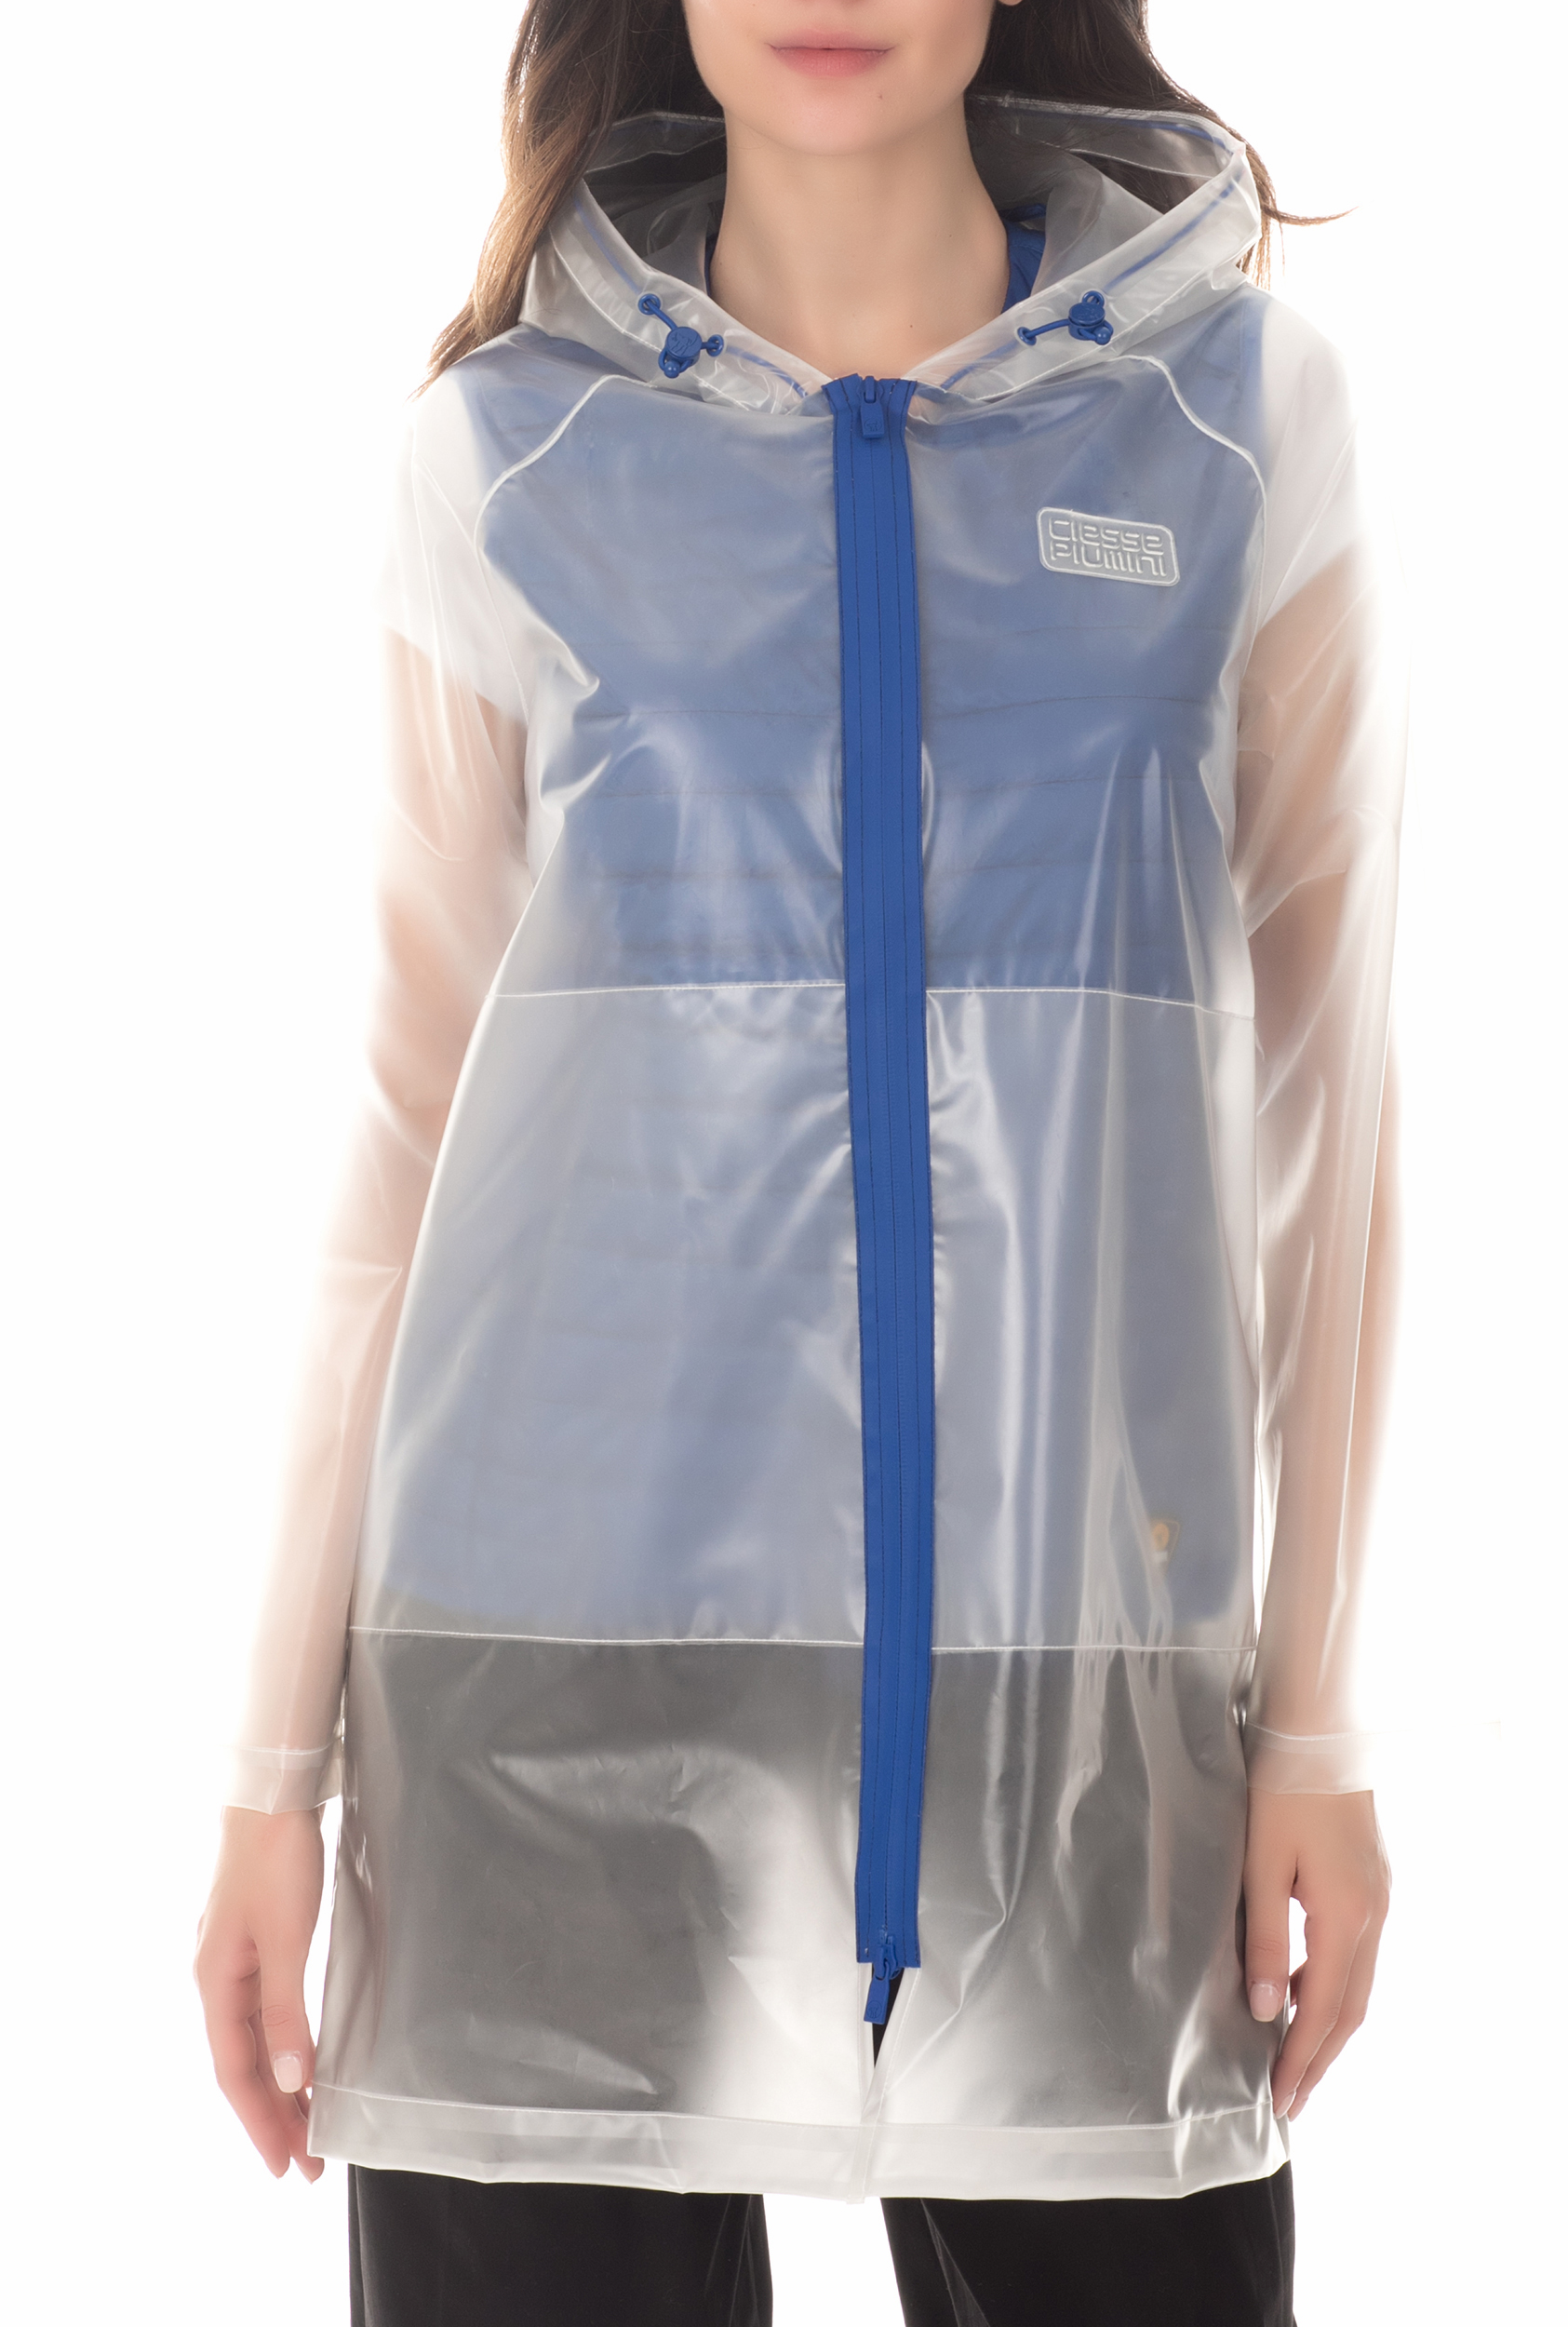 Γυναικεία/Ρούχα/Πανωφόρια/Μπουφάν CIESSE PIUMINI - Γυναικείο μπουφάν CIESSE PIUMINI SHARON - HOODY διάφανo-μπλε